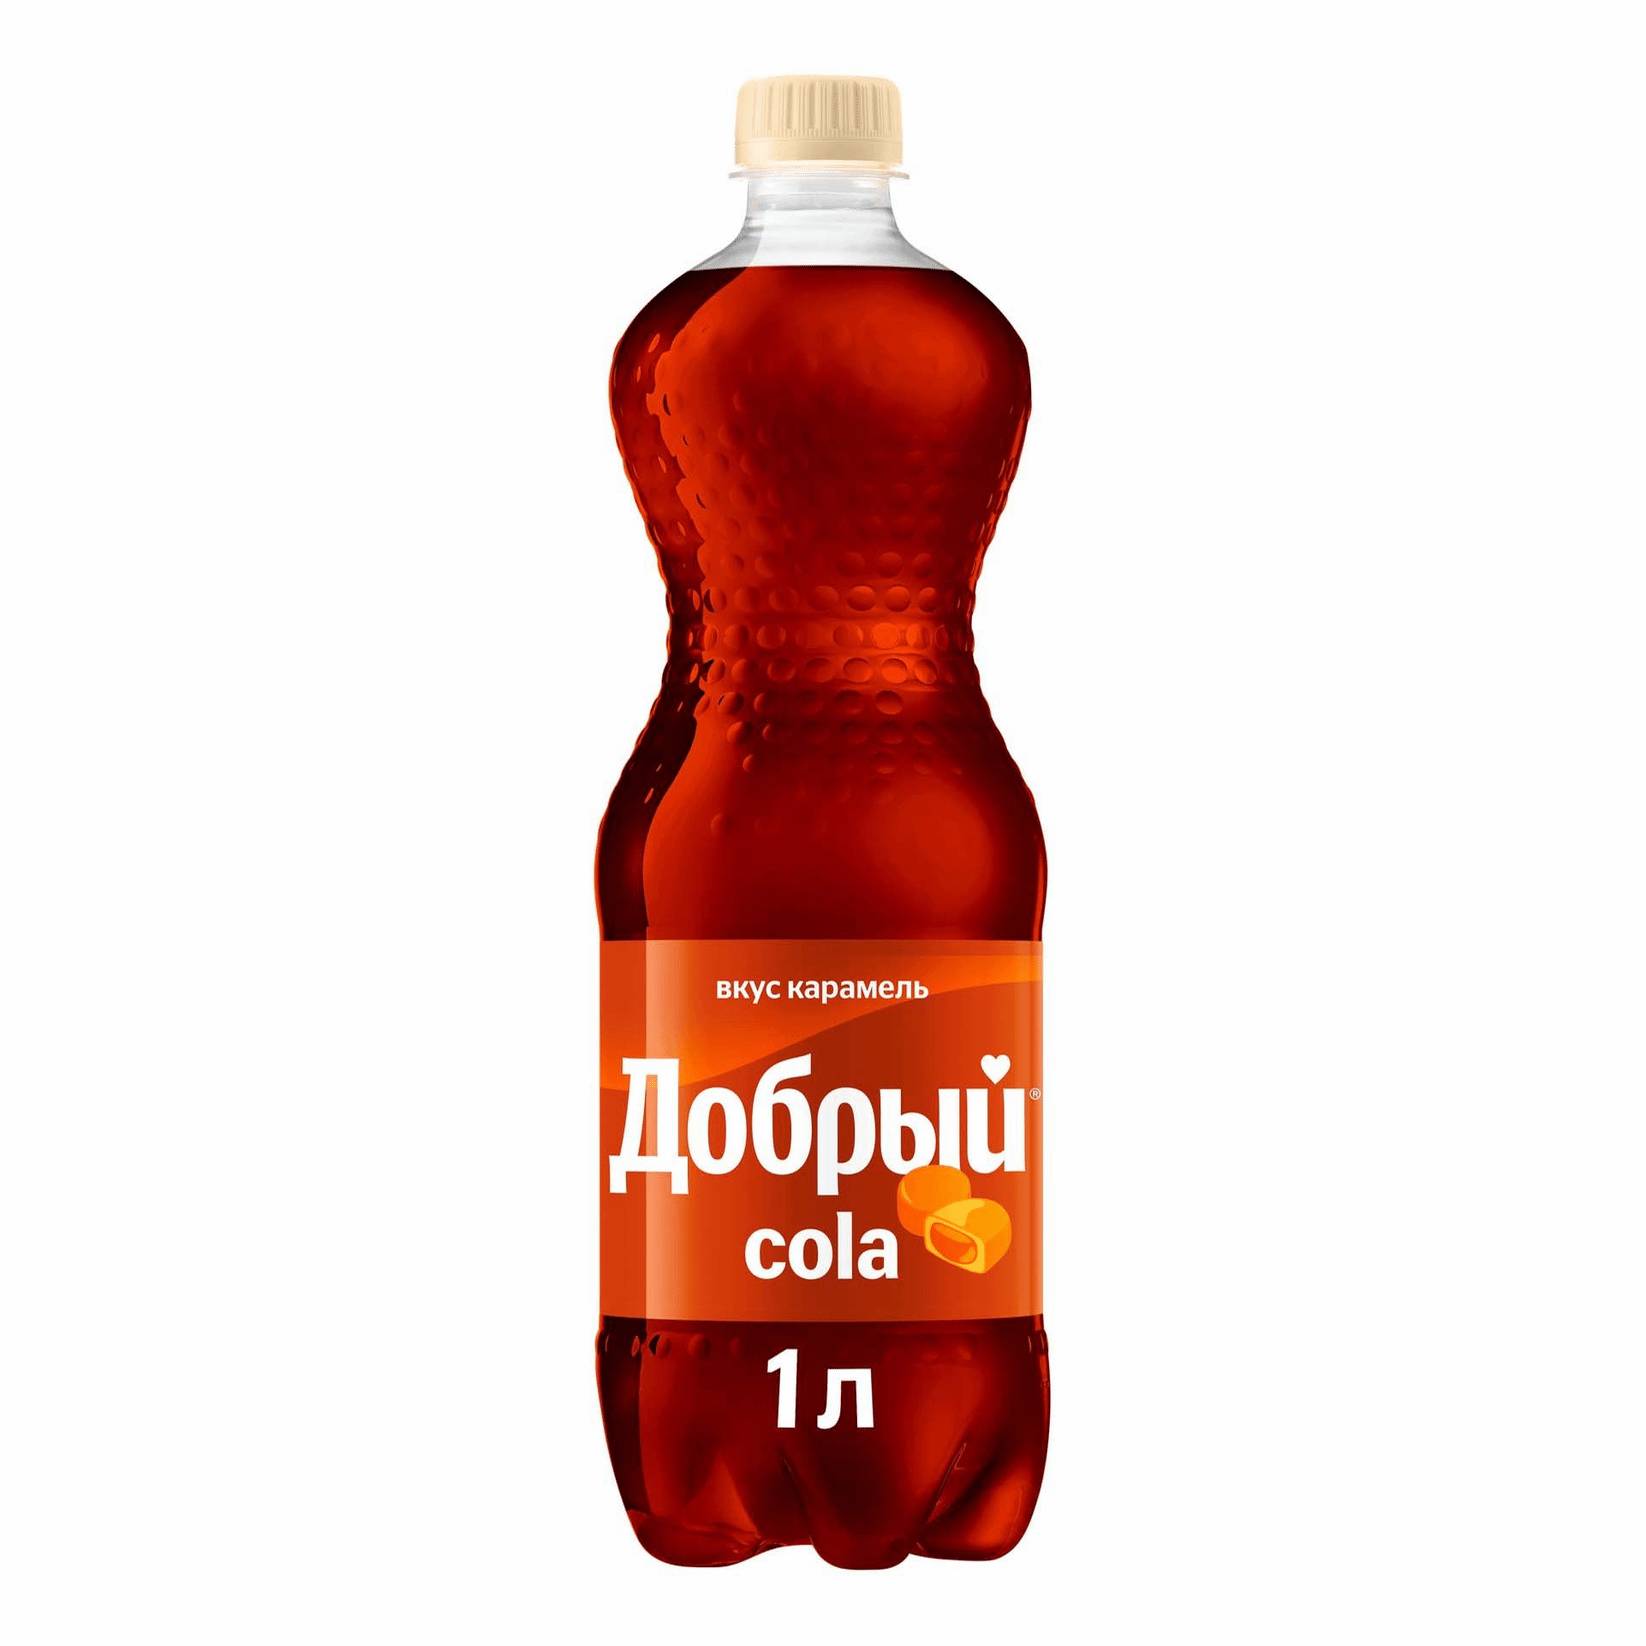 Напиток Добрый Cola карамель, 1 л напиток волчок cola 0 33 литра газ ж б 24 шт в уп